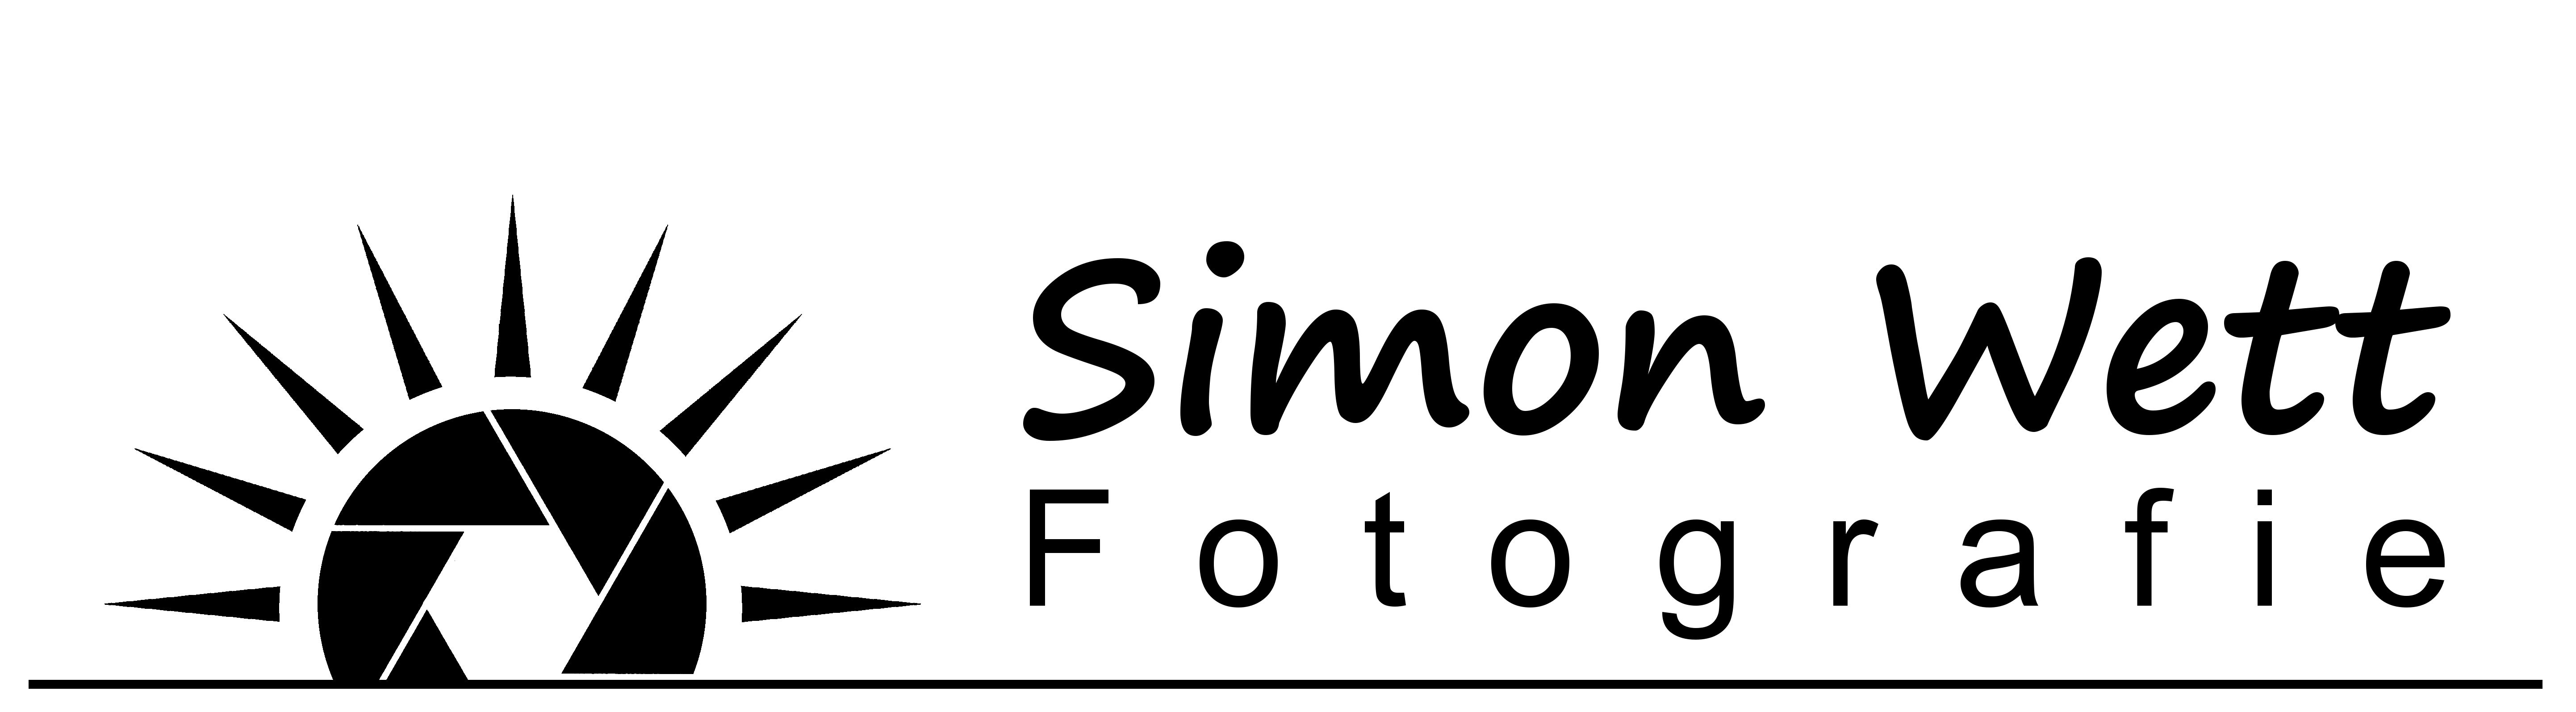 Simon Wett Fotografie